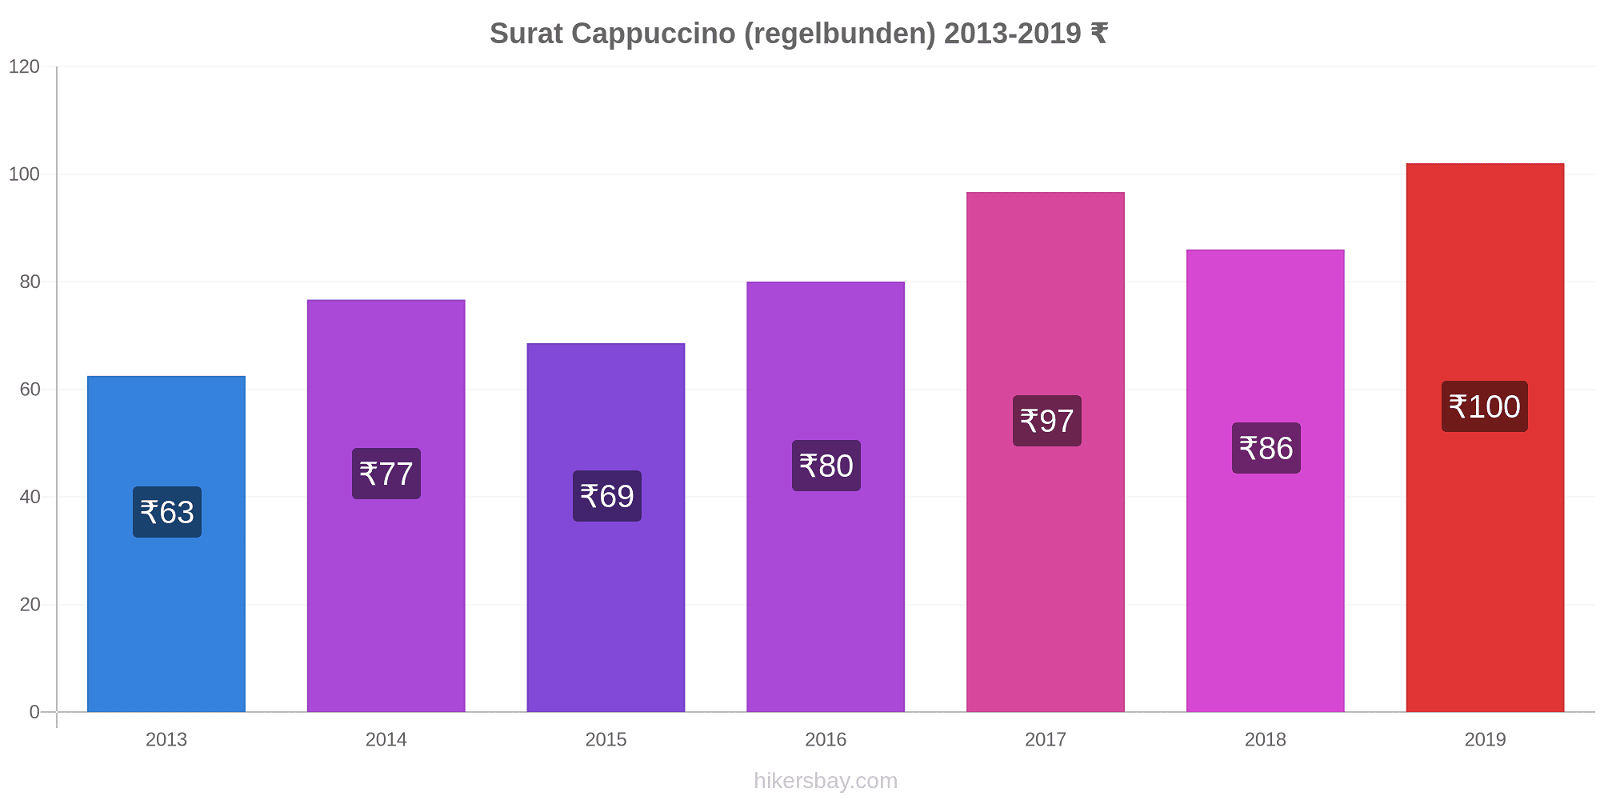 Surat prisförändringar Cappuccino (regelbunden) hikersbay.com